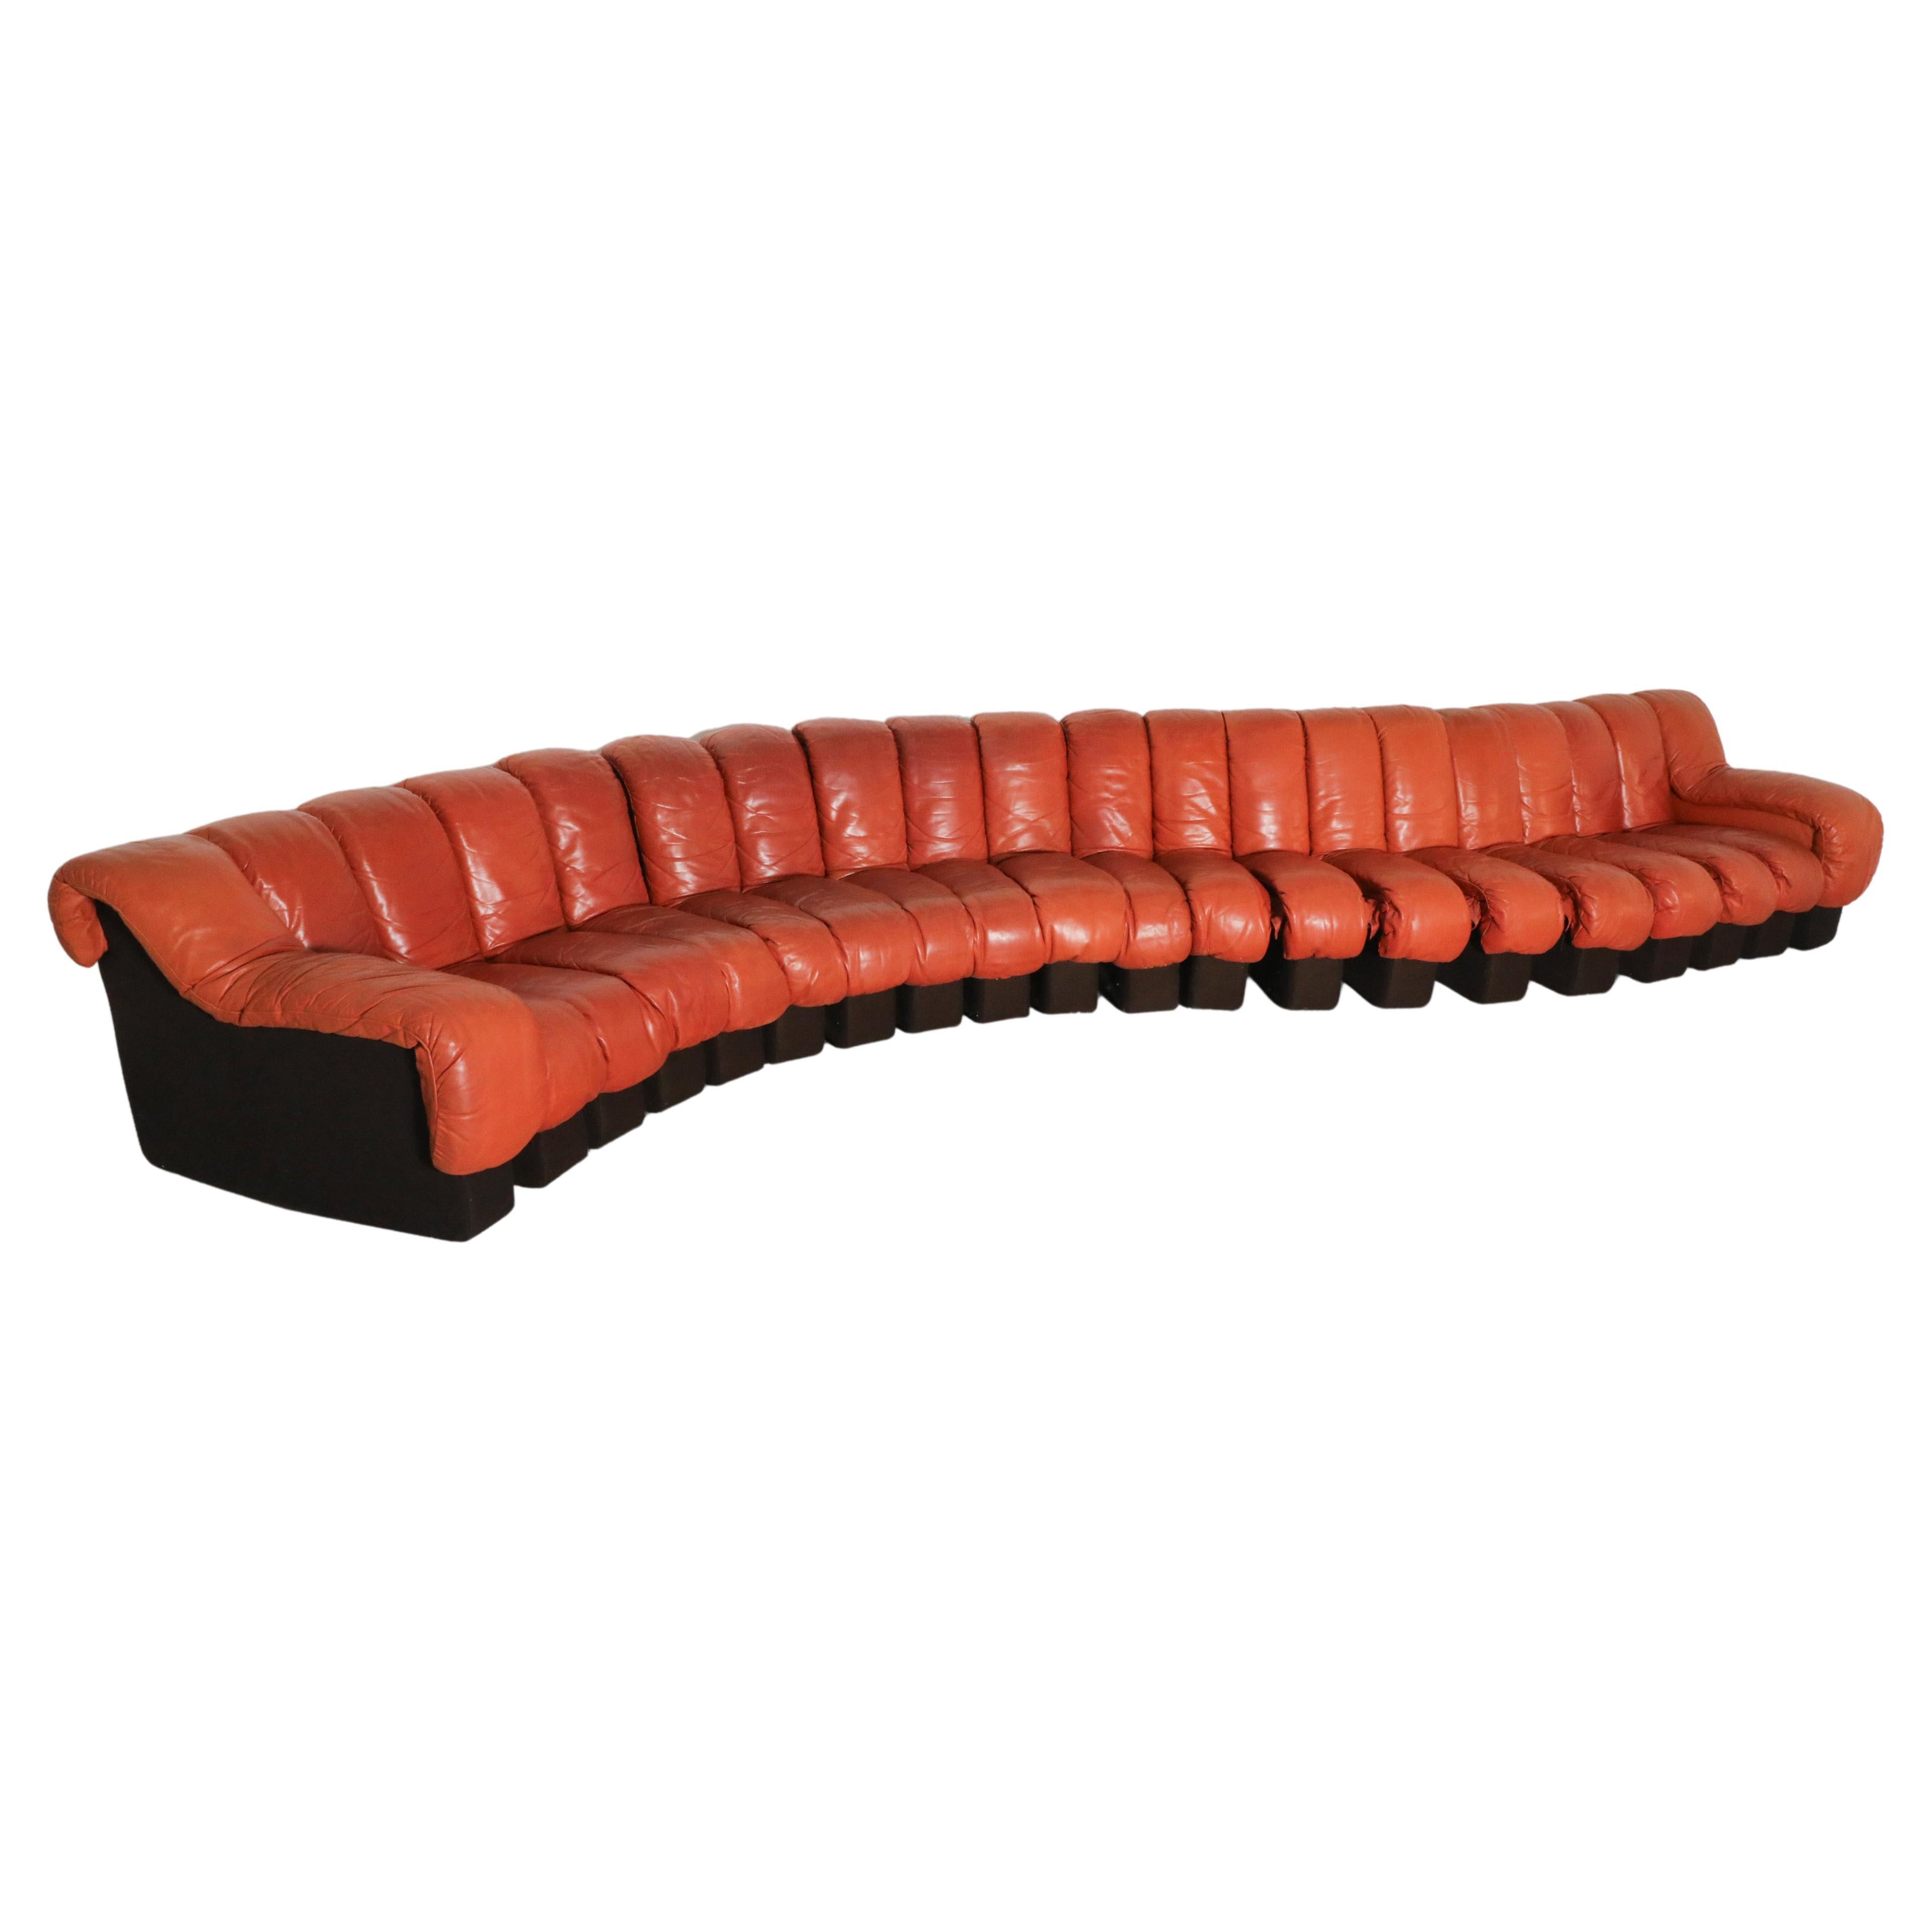 Gorgeous De Sede 20 Piece DS600 "Non-Stop" Sectional Sofa, Burnt Orange Leather